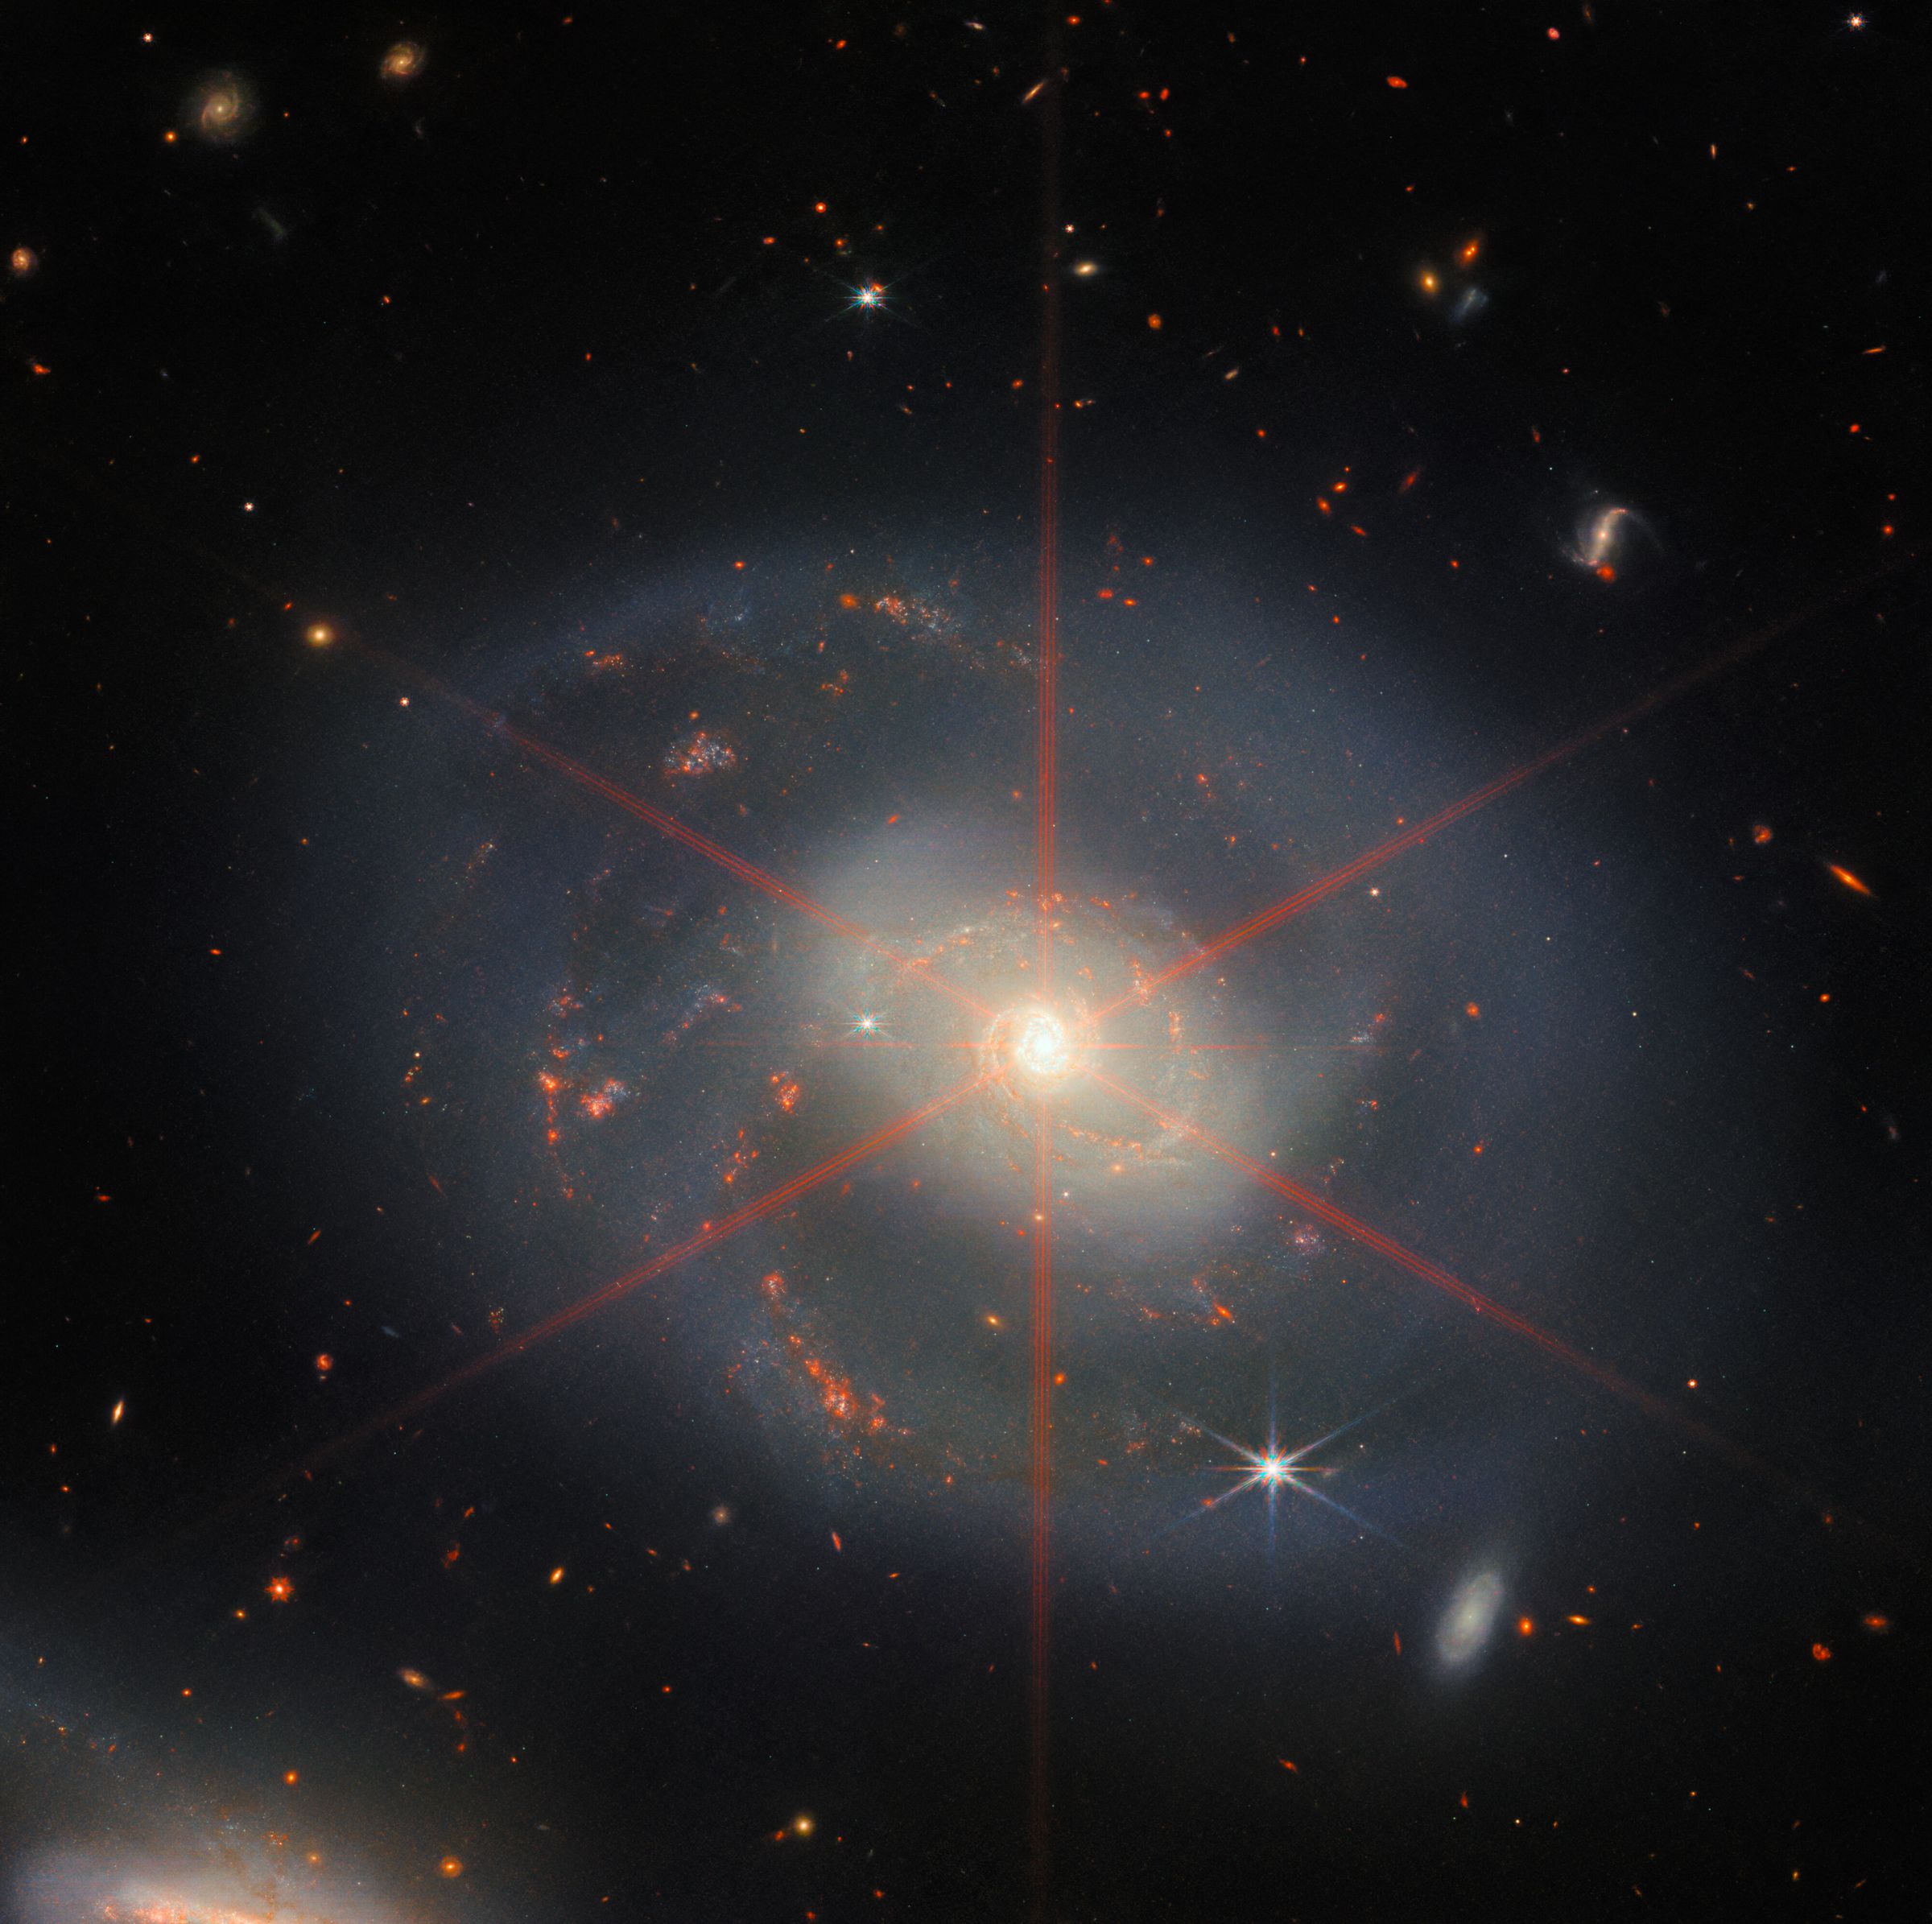 تُظهر هذه الصورة مجرة ​​حلزونية تهيمن عليها منطقة مركزية لامعة.  تتميز المجرة بألوان زرقاء أرجوانية مع مناطق برتقالية حمراء مليئة بالنجوم.  كما يمكن رؤية ارتفاع الحيود الكبير ، والذي يظهر كنمط نجمي فوق المنطقة الوسطى من المجرة.  تملأ الكثير من النجوم والمجرات مشهد الخلفية